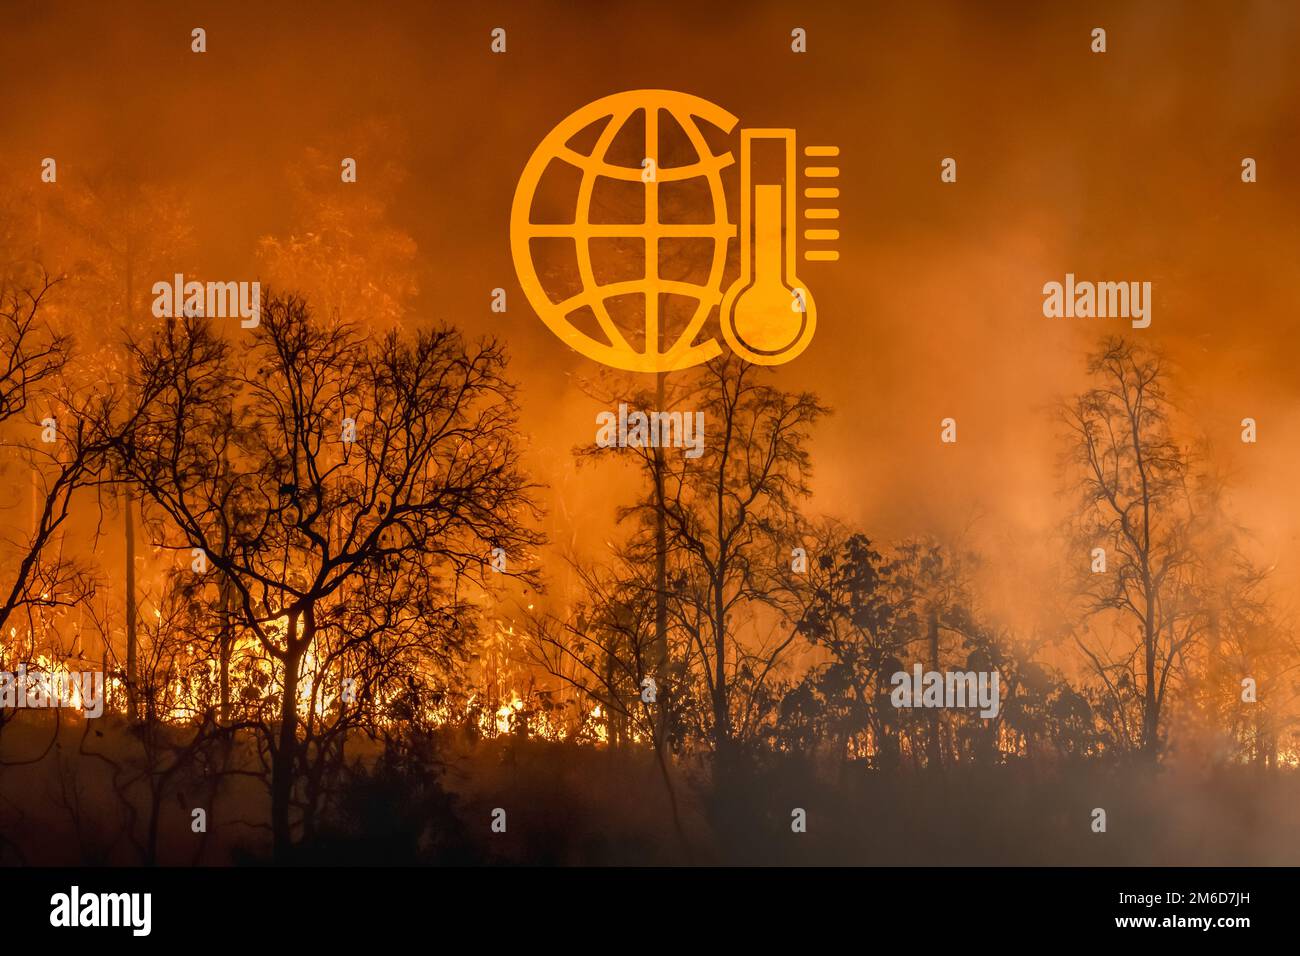 Les incendies de forêt dégagent CO2 émissions et d'autres gaz à effet de serre (GES) qui contribuent au changement climatique. Banque D'Images